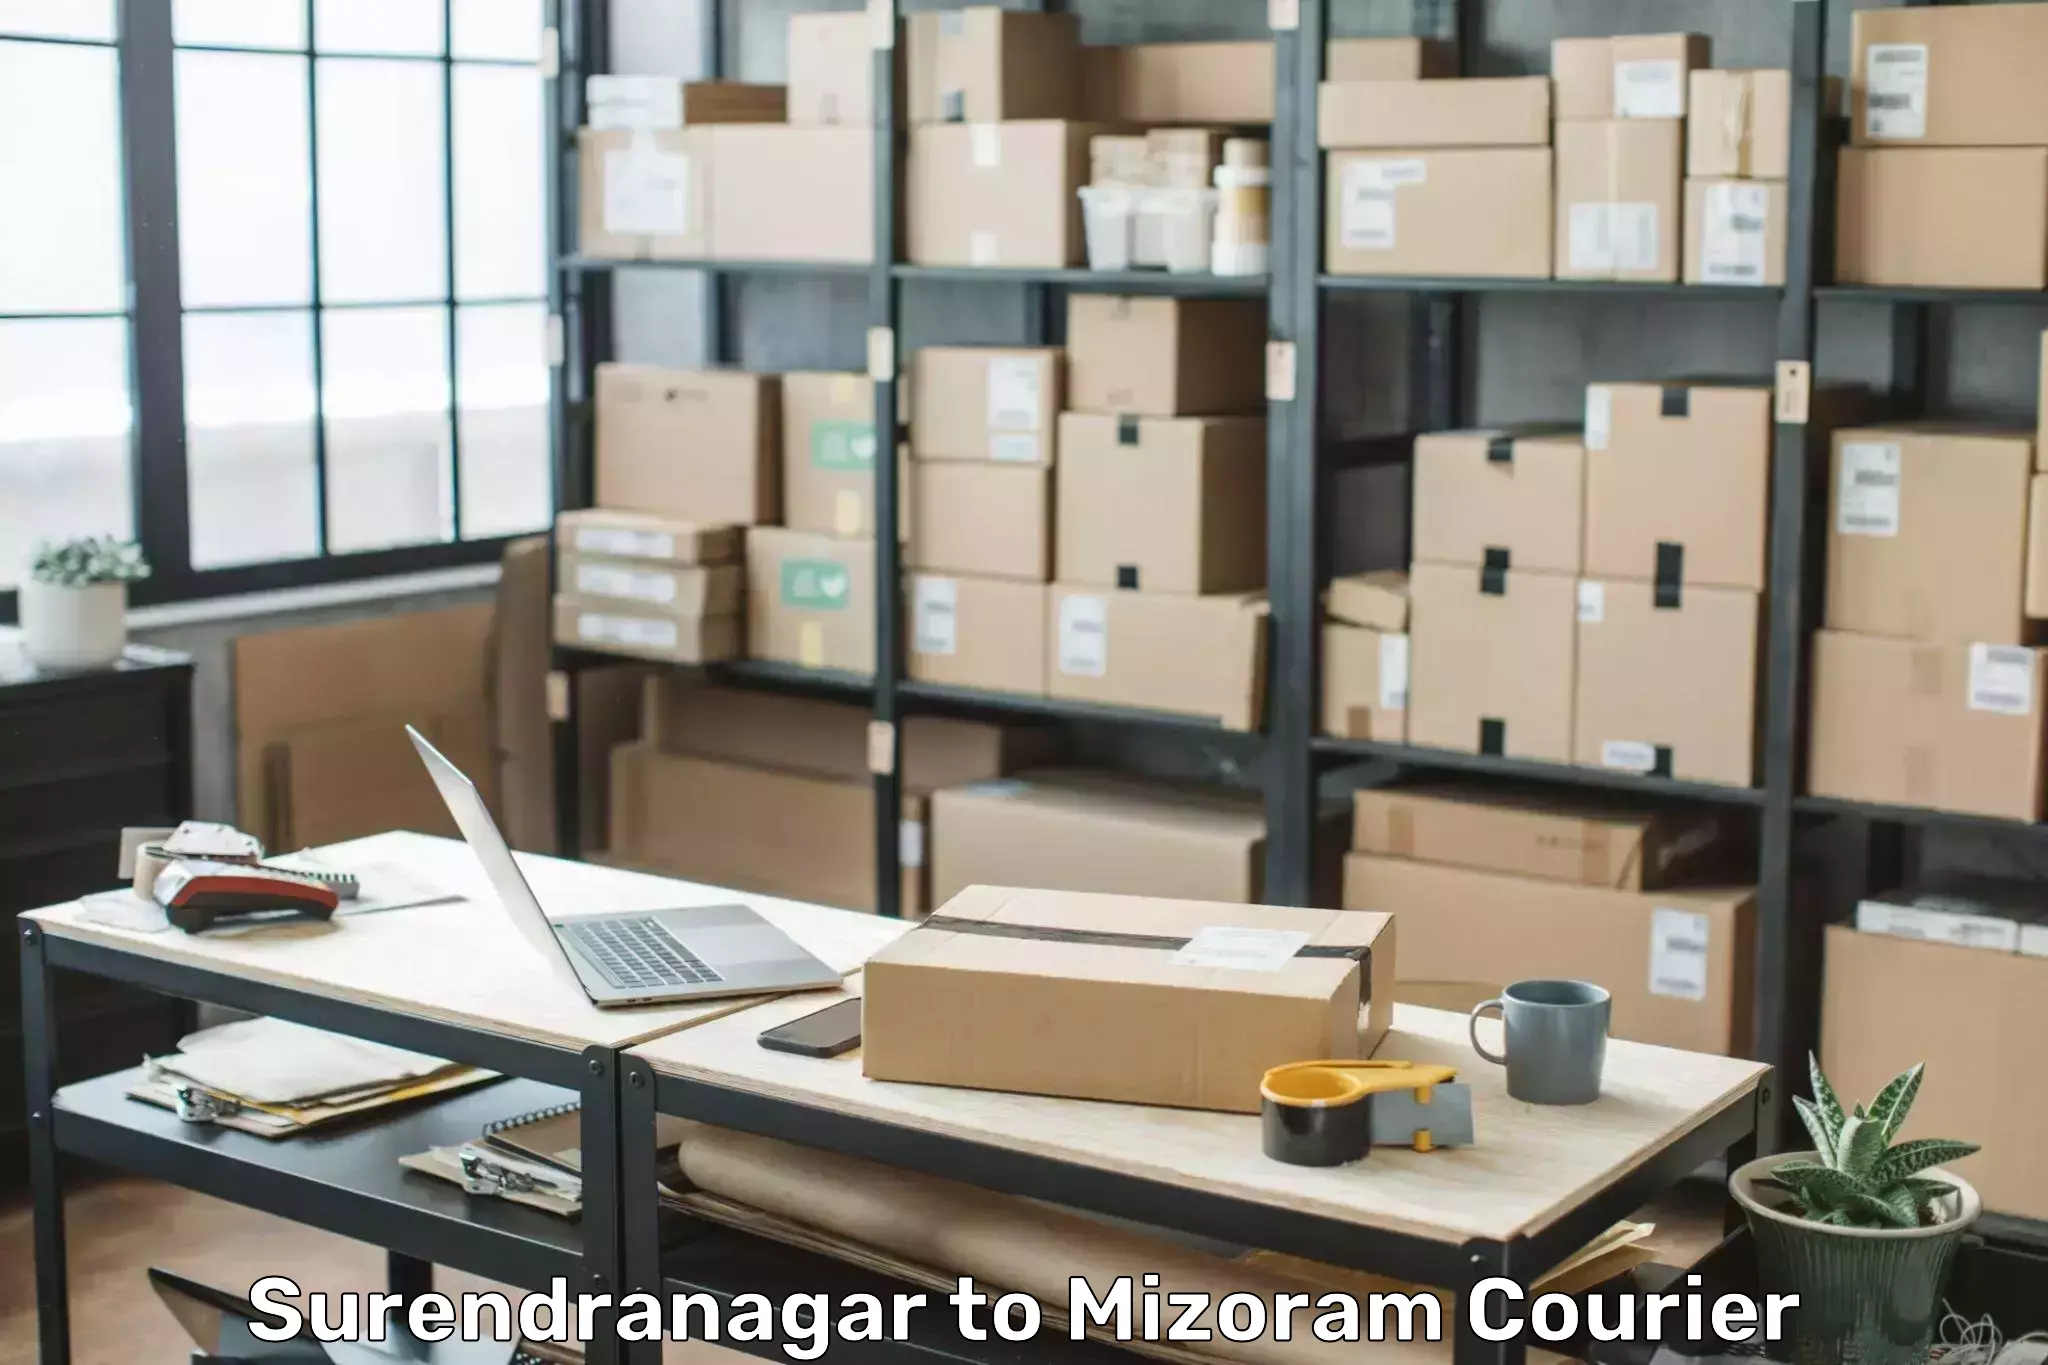 Digital baggage courier Surendranagar to Aizawl